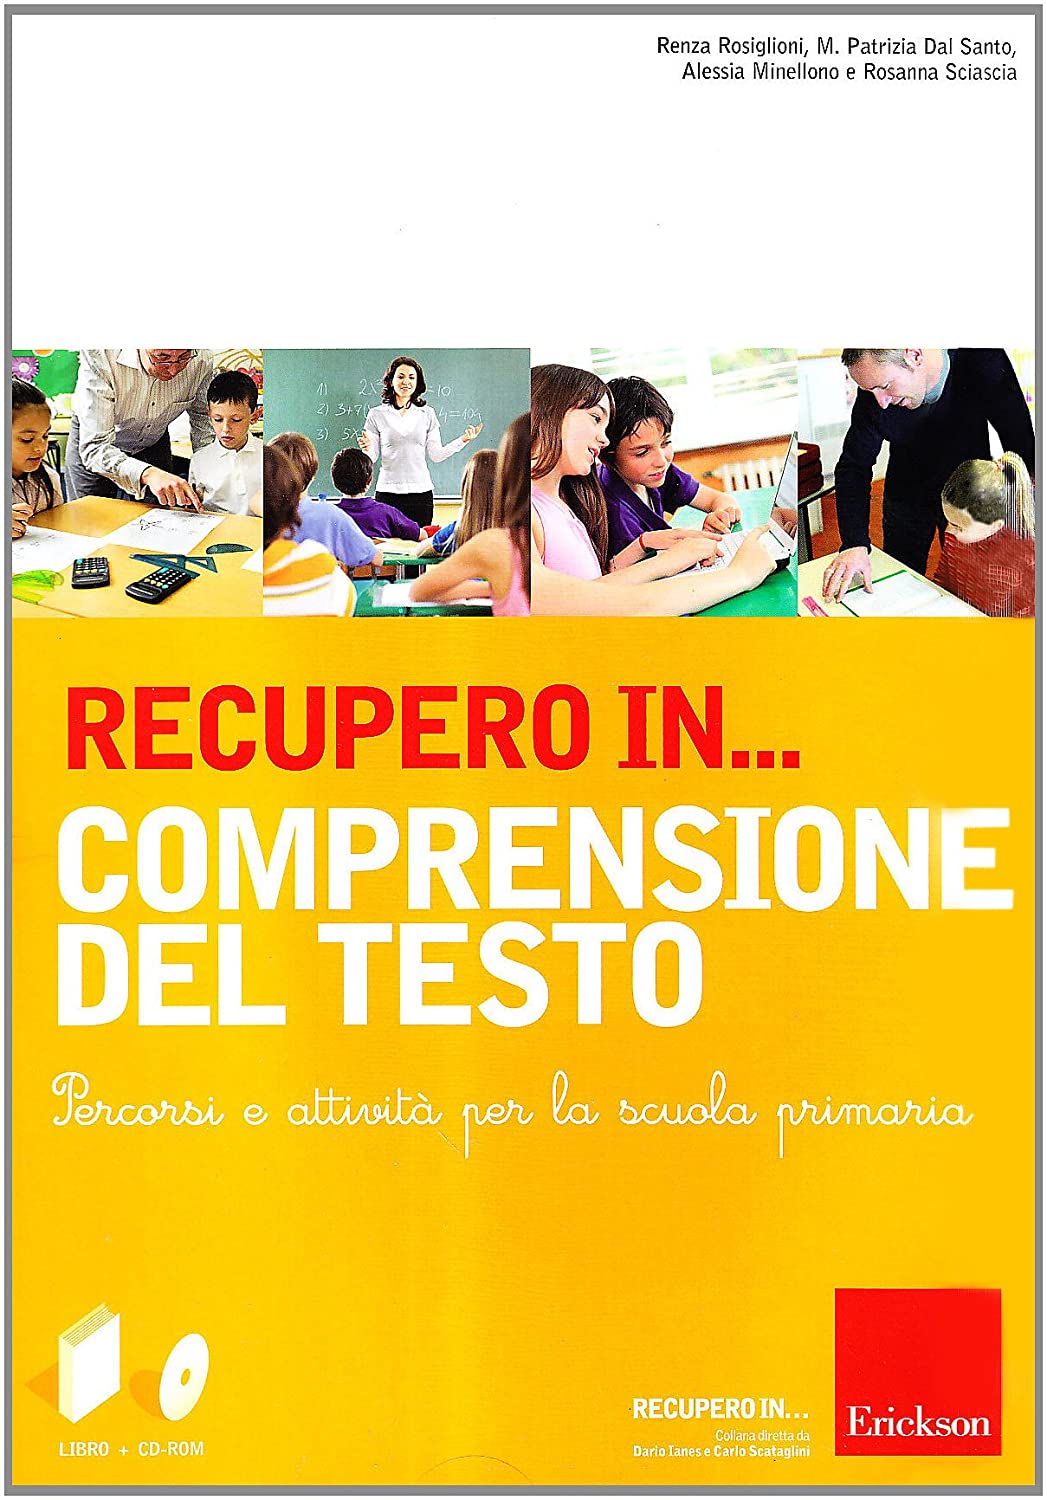 Libri Recupero In... Comprensione Del Testo. CD-ROM. Con Libro NUOVO SIGILLATO, EDIZIONE DEL 01/09/2012 SUBITO DISPONIBILE